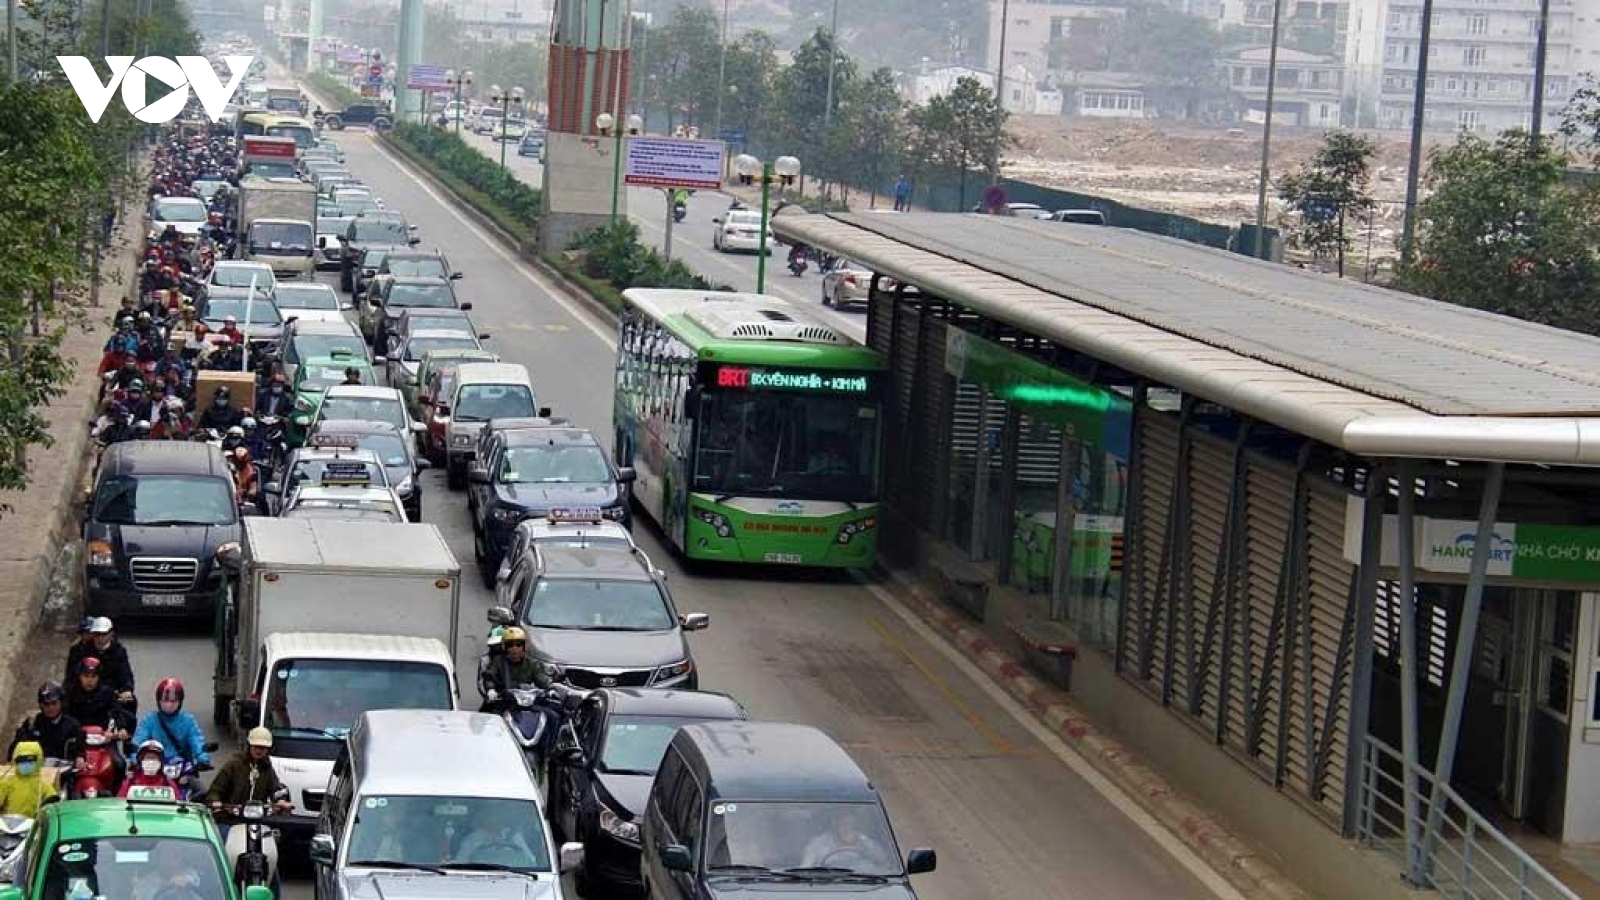 Buýt nhanh BRT và bài học về quy trách nhiệm